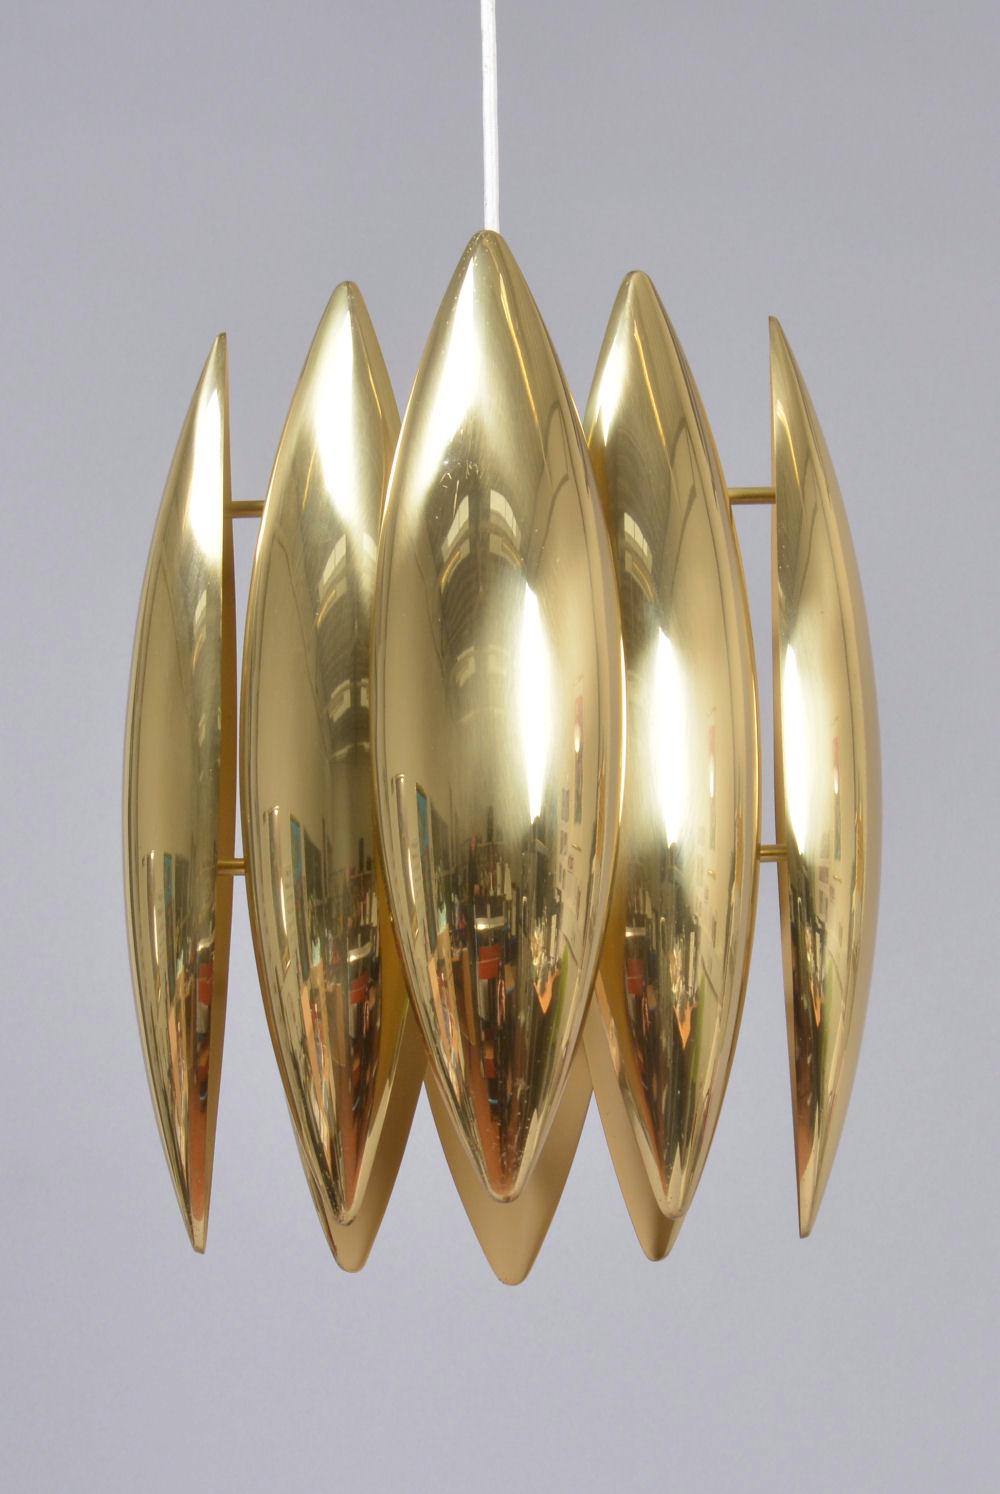 Un laiton  Lampe suspendue Kasror conçue par Jo Hammerborg et éditée par Fog & Morup.Les huit réflecteurs sont laqués en blanc à l'intérieur.Excellente lampe iconique de Hammerborg.La hauteur totale est de 115 cm.L'emballage et l'expédition